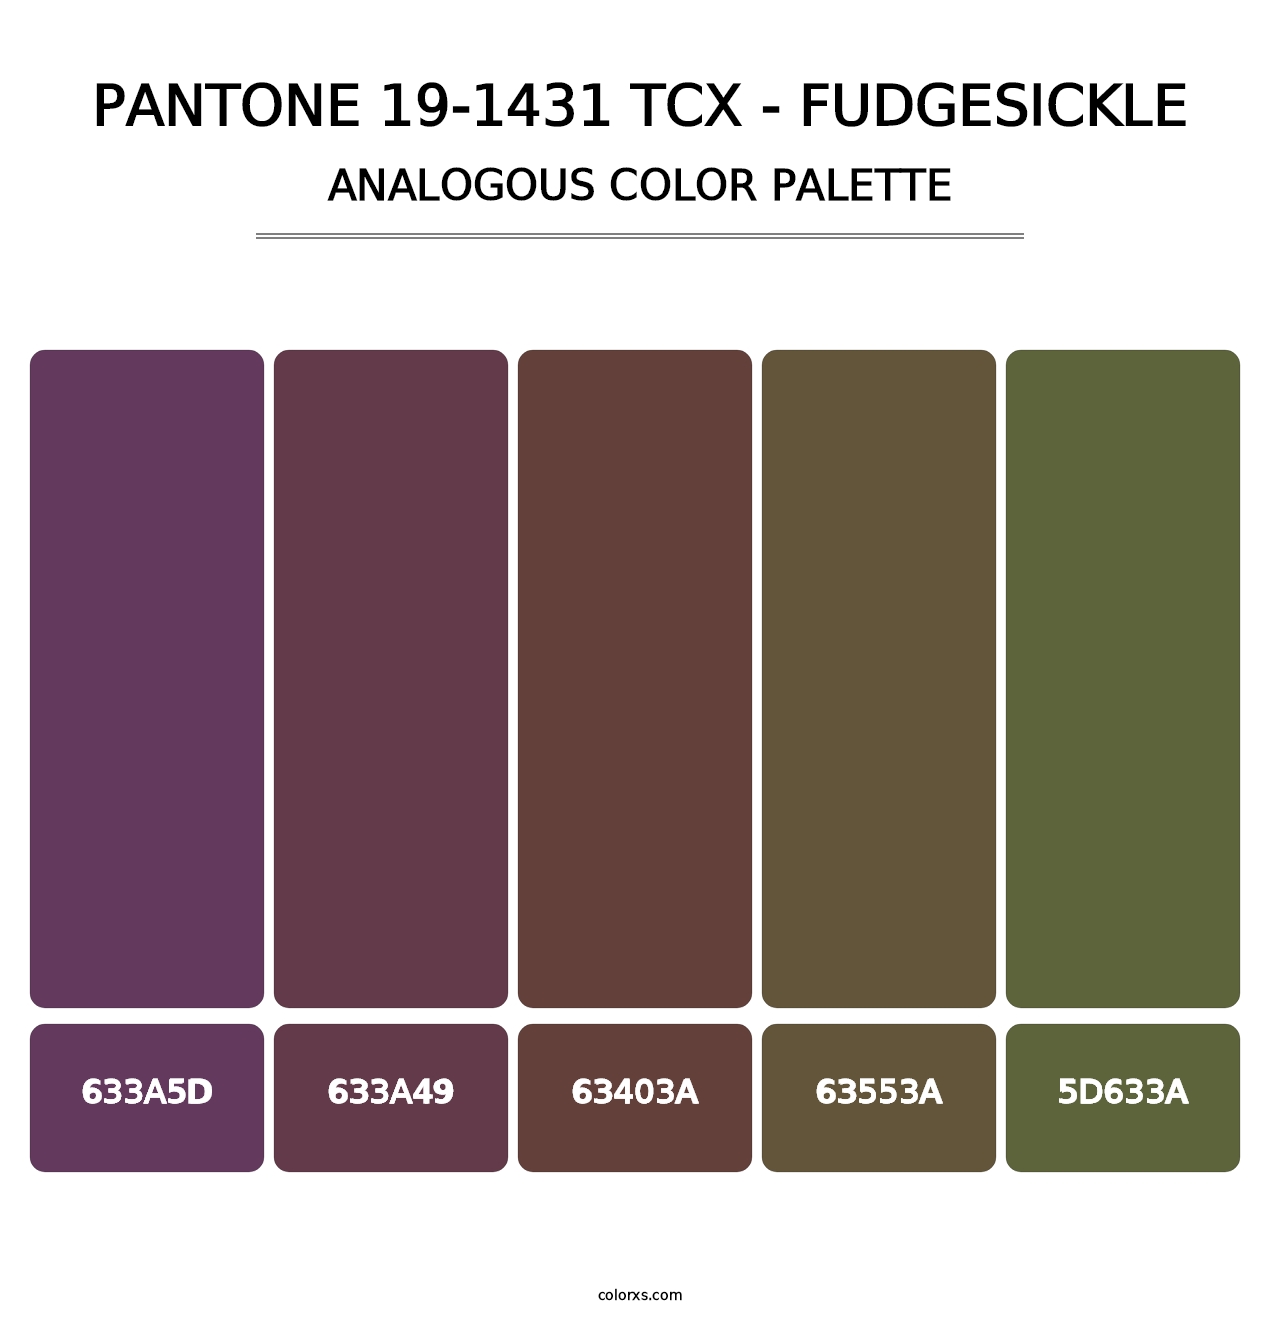 PANTONE 19-1431 TCX - Fudgesickle - Analogous Color Palette